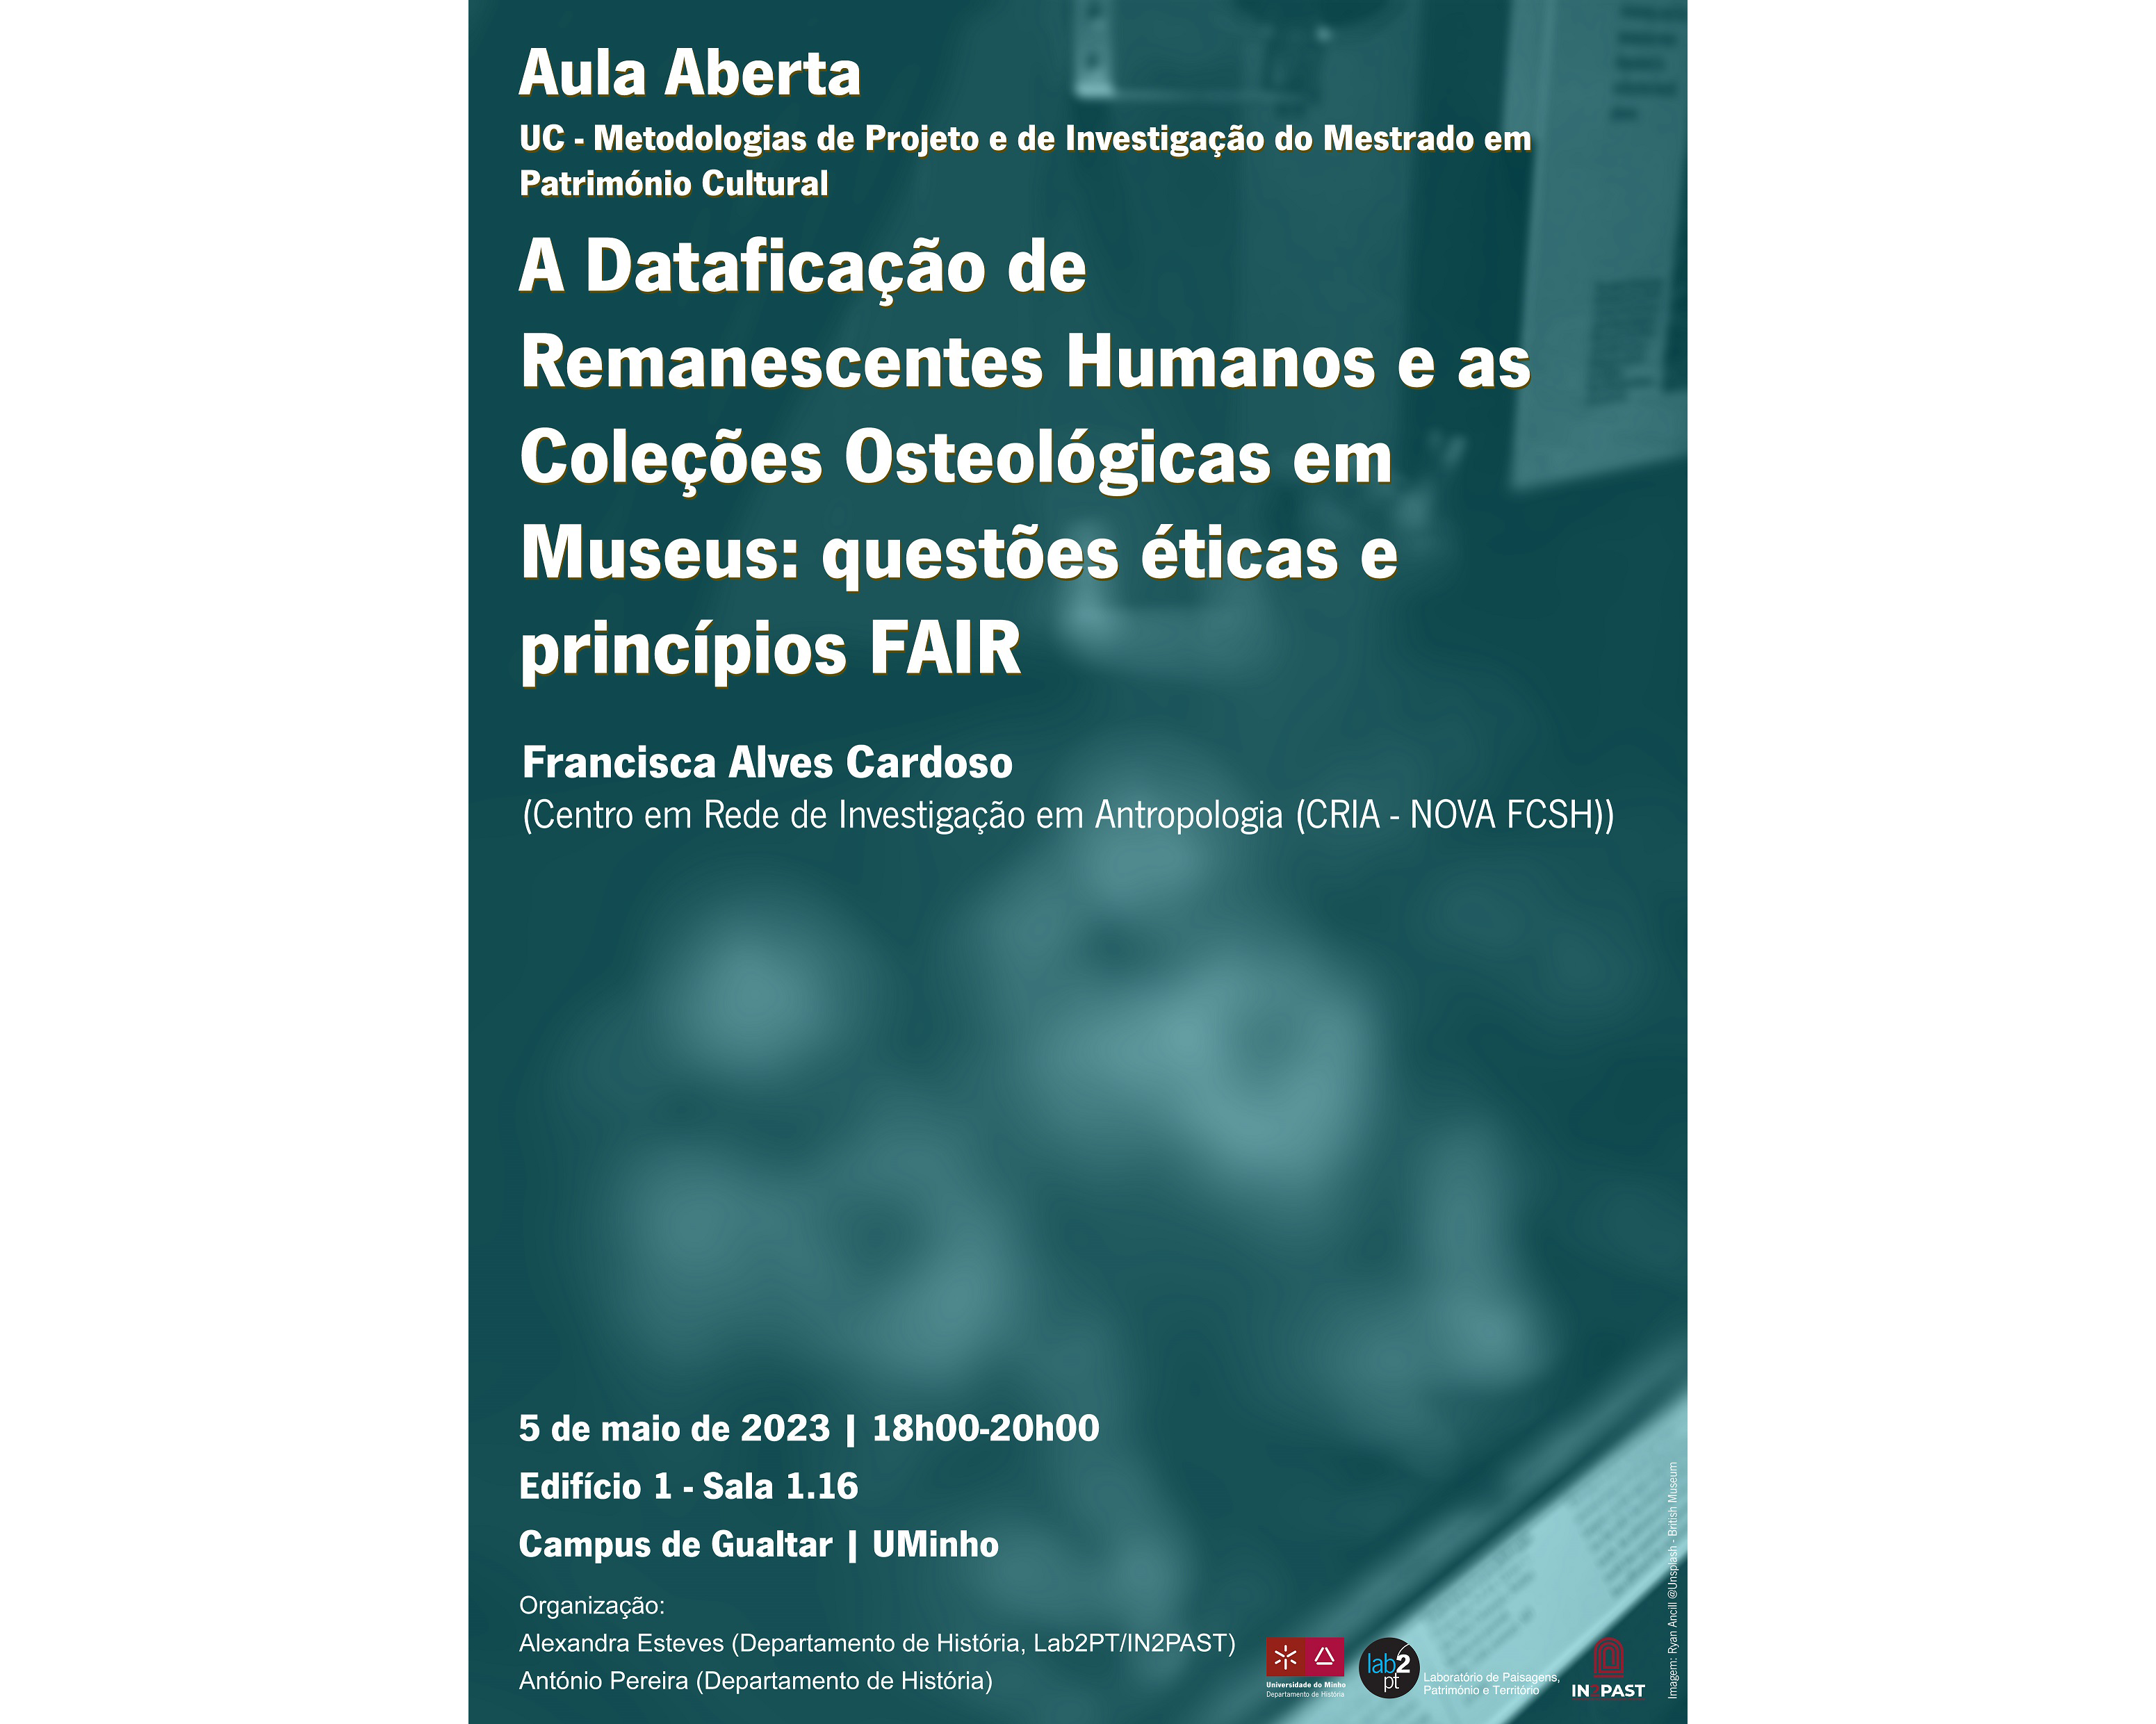 Aula aberta "A Dataficação de Remanescentes Humanos e as Coleções Osteológicas em Museus: questões éticas e princípios FAIR" image